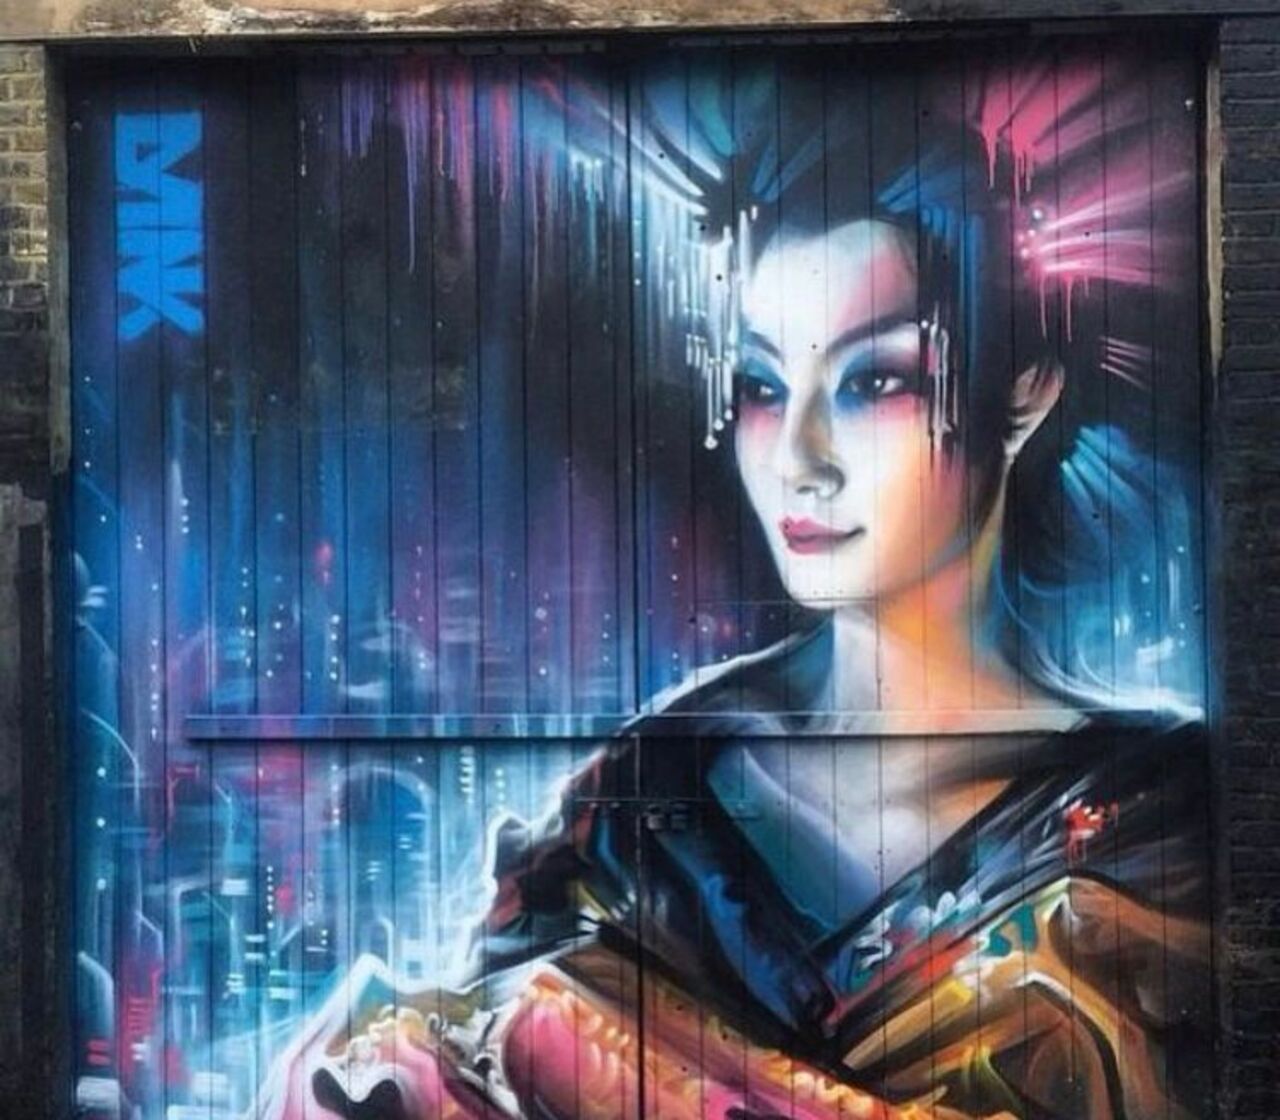 New work by Dan Kitchener #streetart #mural #graffiti #art https://t.co/5rE0V11xbS